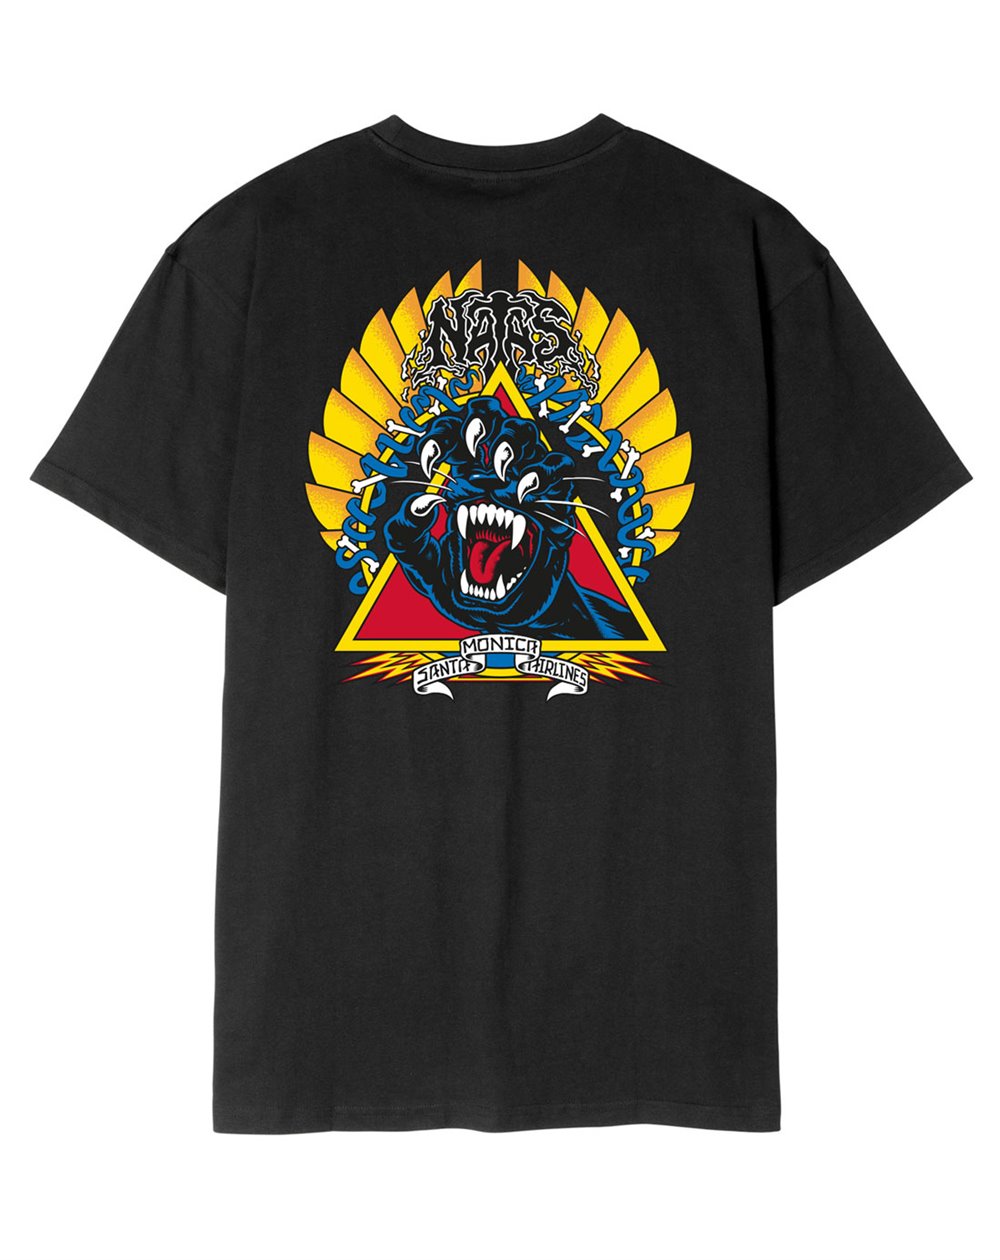 Santa Cruz Men's T-Shirt Natas Screaming Panther (Black)